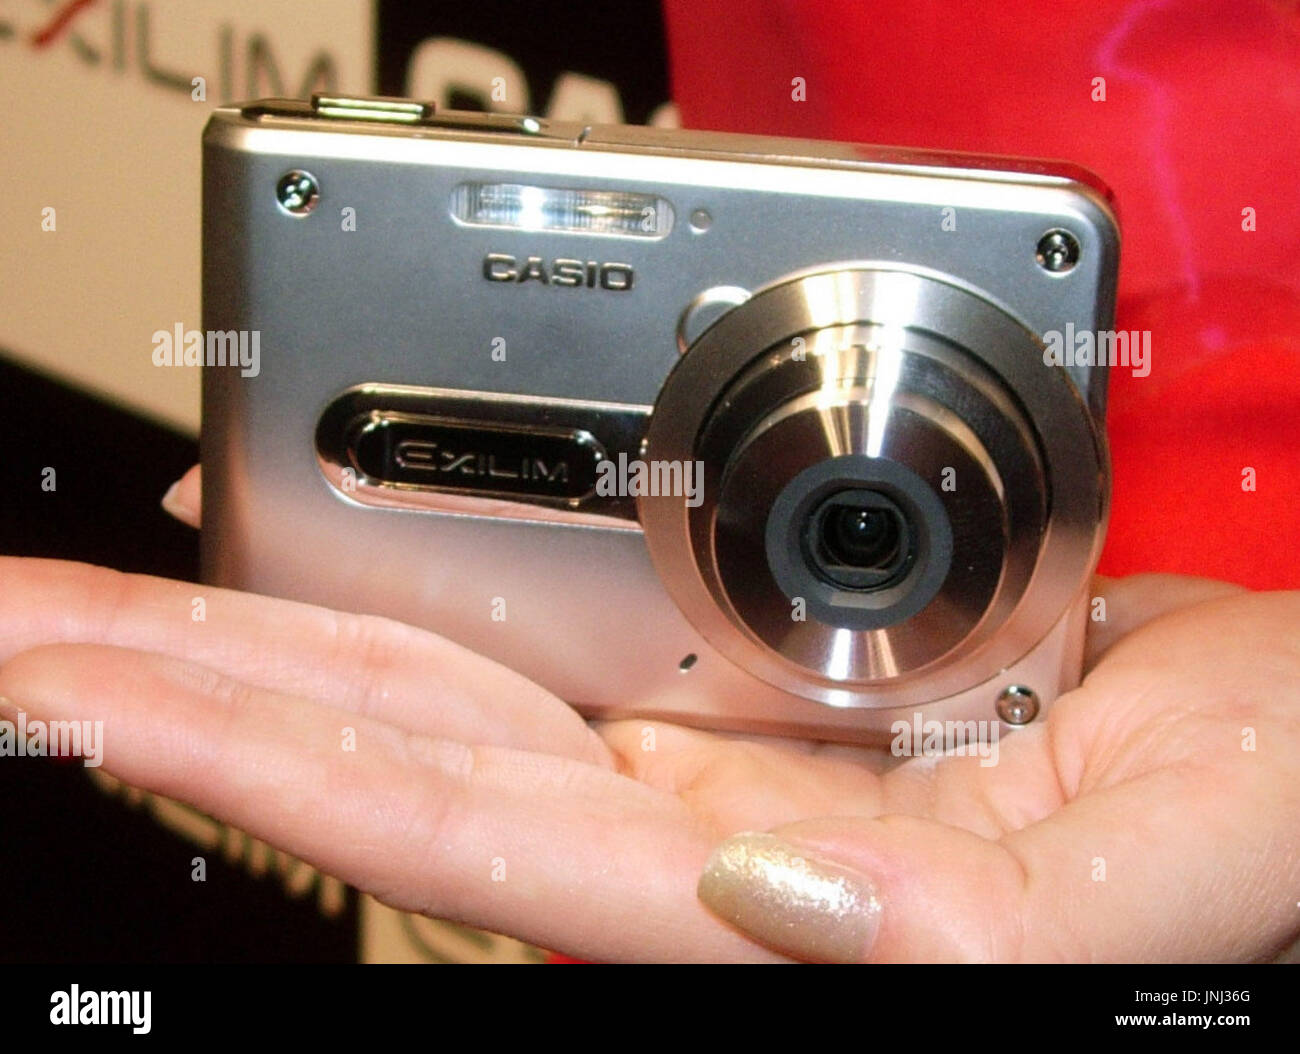 Tokio, Japón - Casio Computer Co. lanzará la cámara digital más pequeña del  mundo con una lente de zoom, la cámara Exilim Card EX-S100 (foto), a  finales de septiembre sólo mide 79